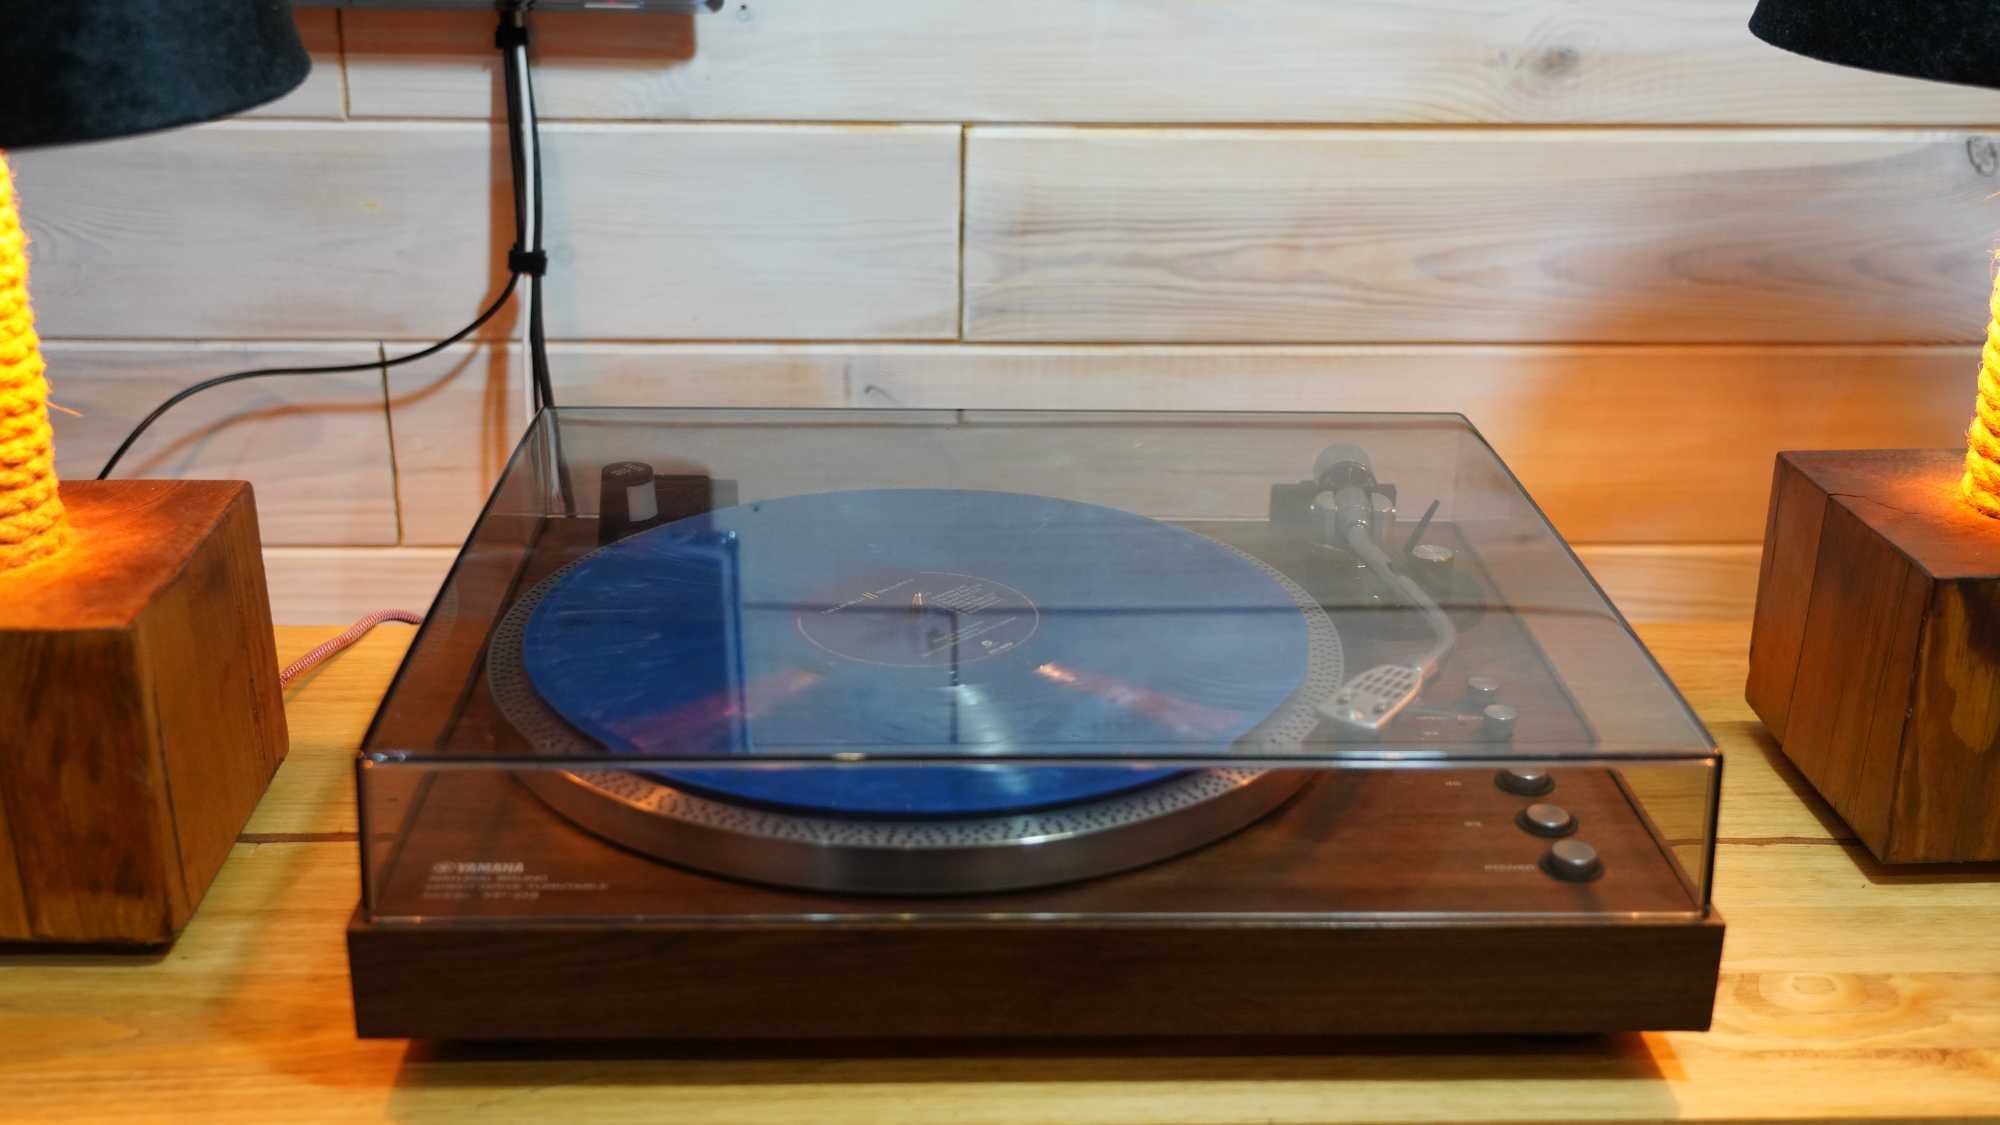 Gramofon Yamaha YP-D3 świetny gramofon w super cenie. Wspaniały dzwięk